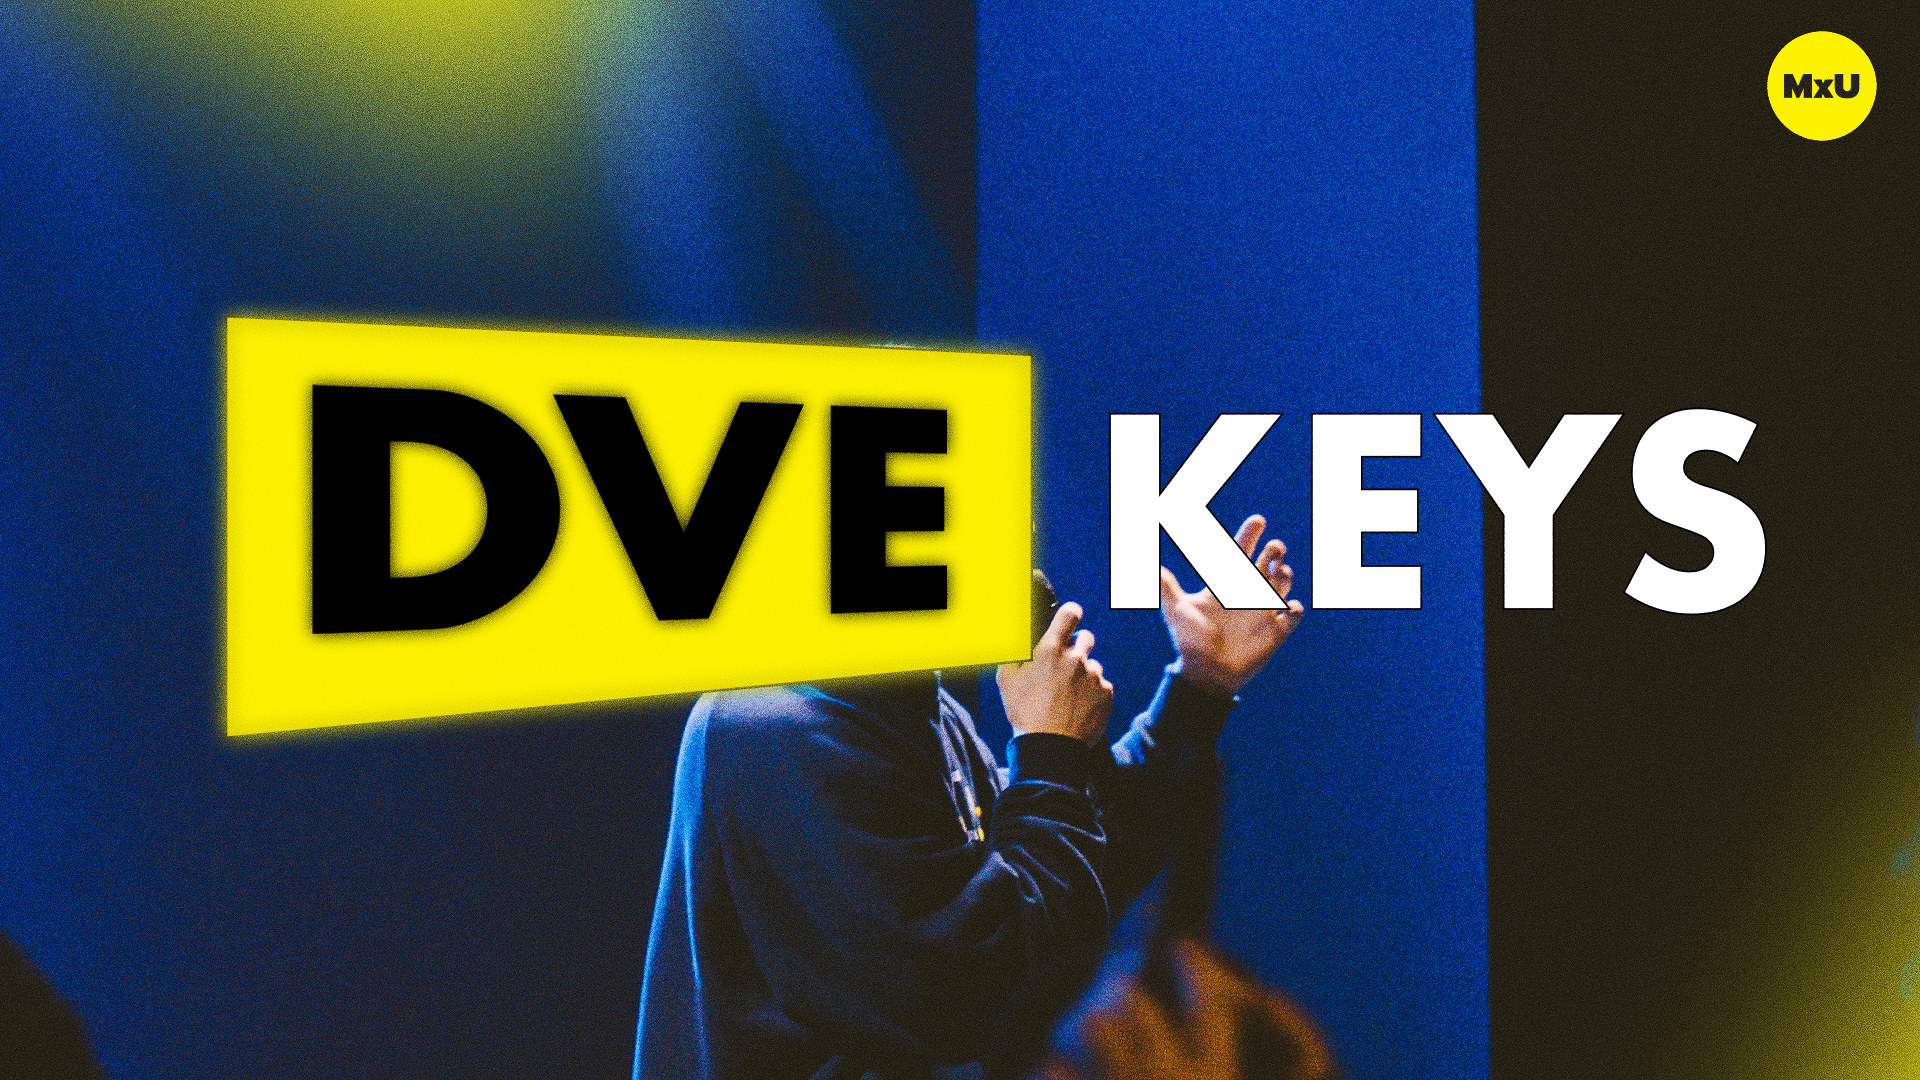 DVE Keys